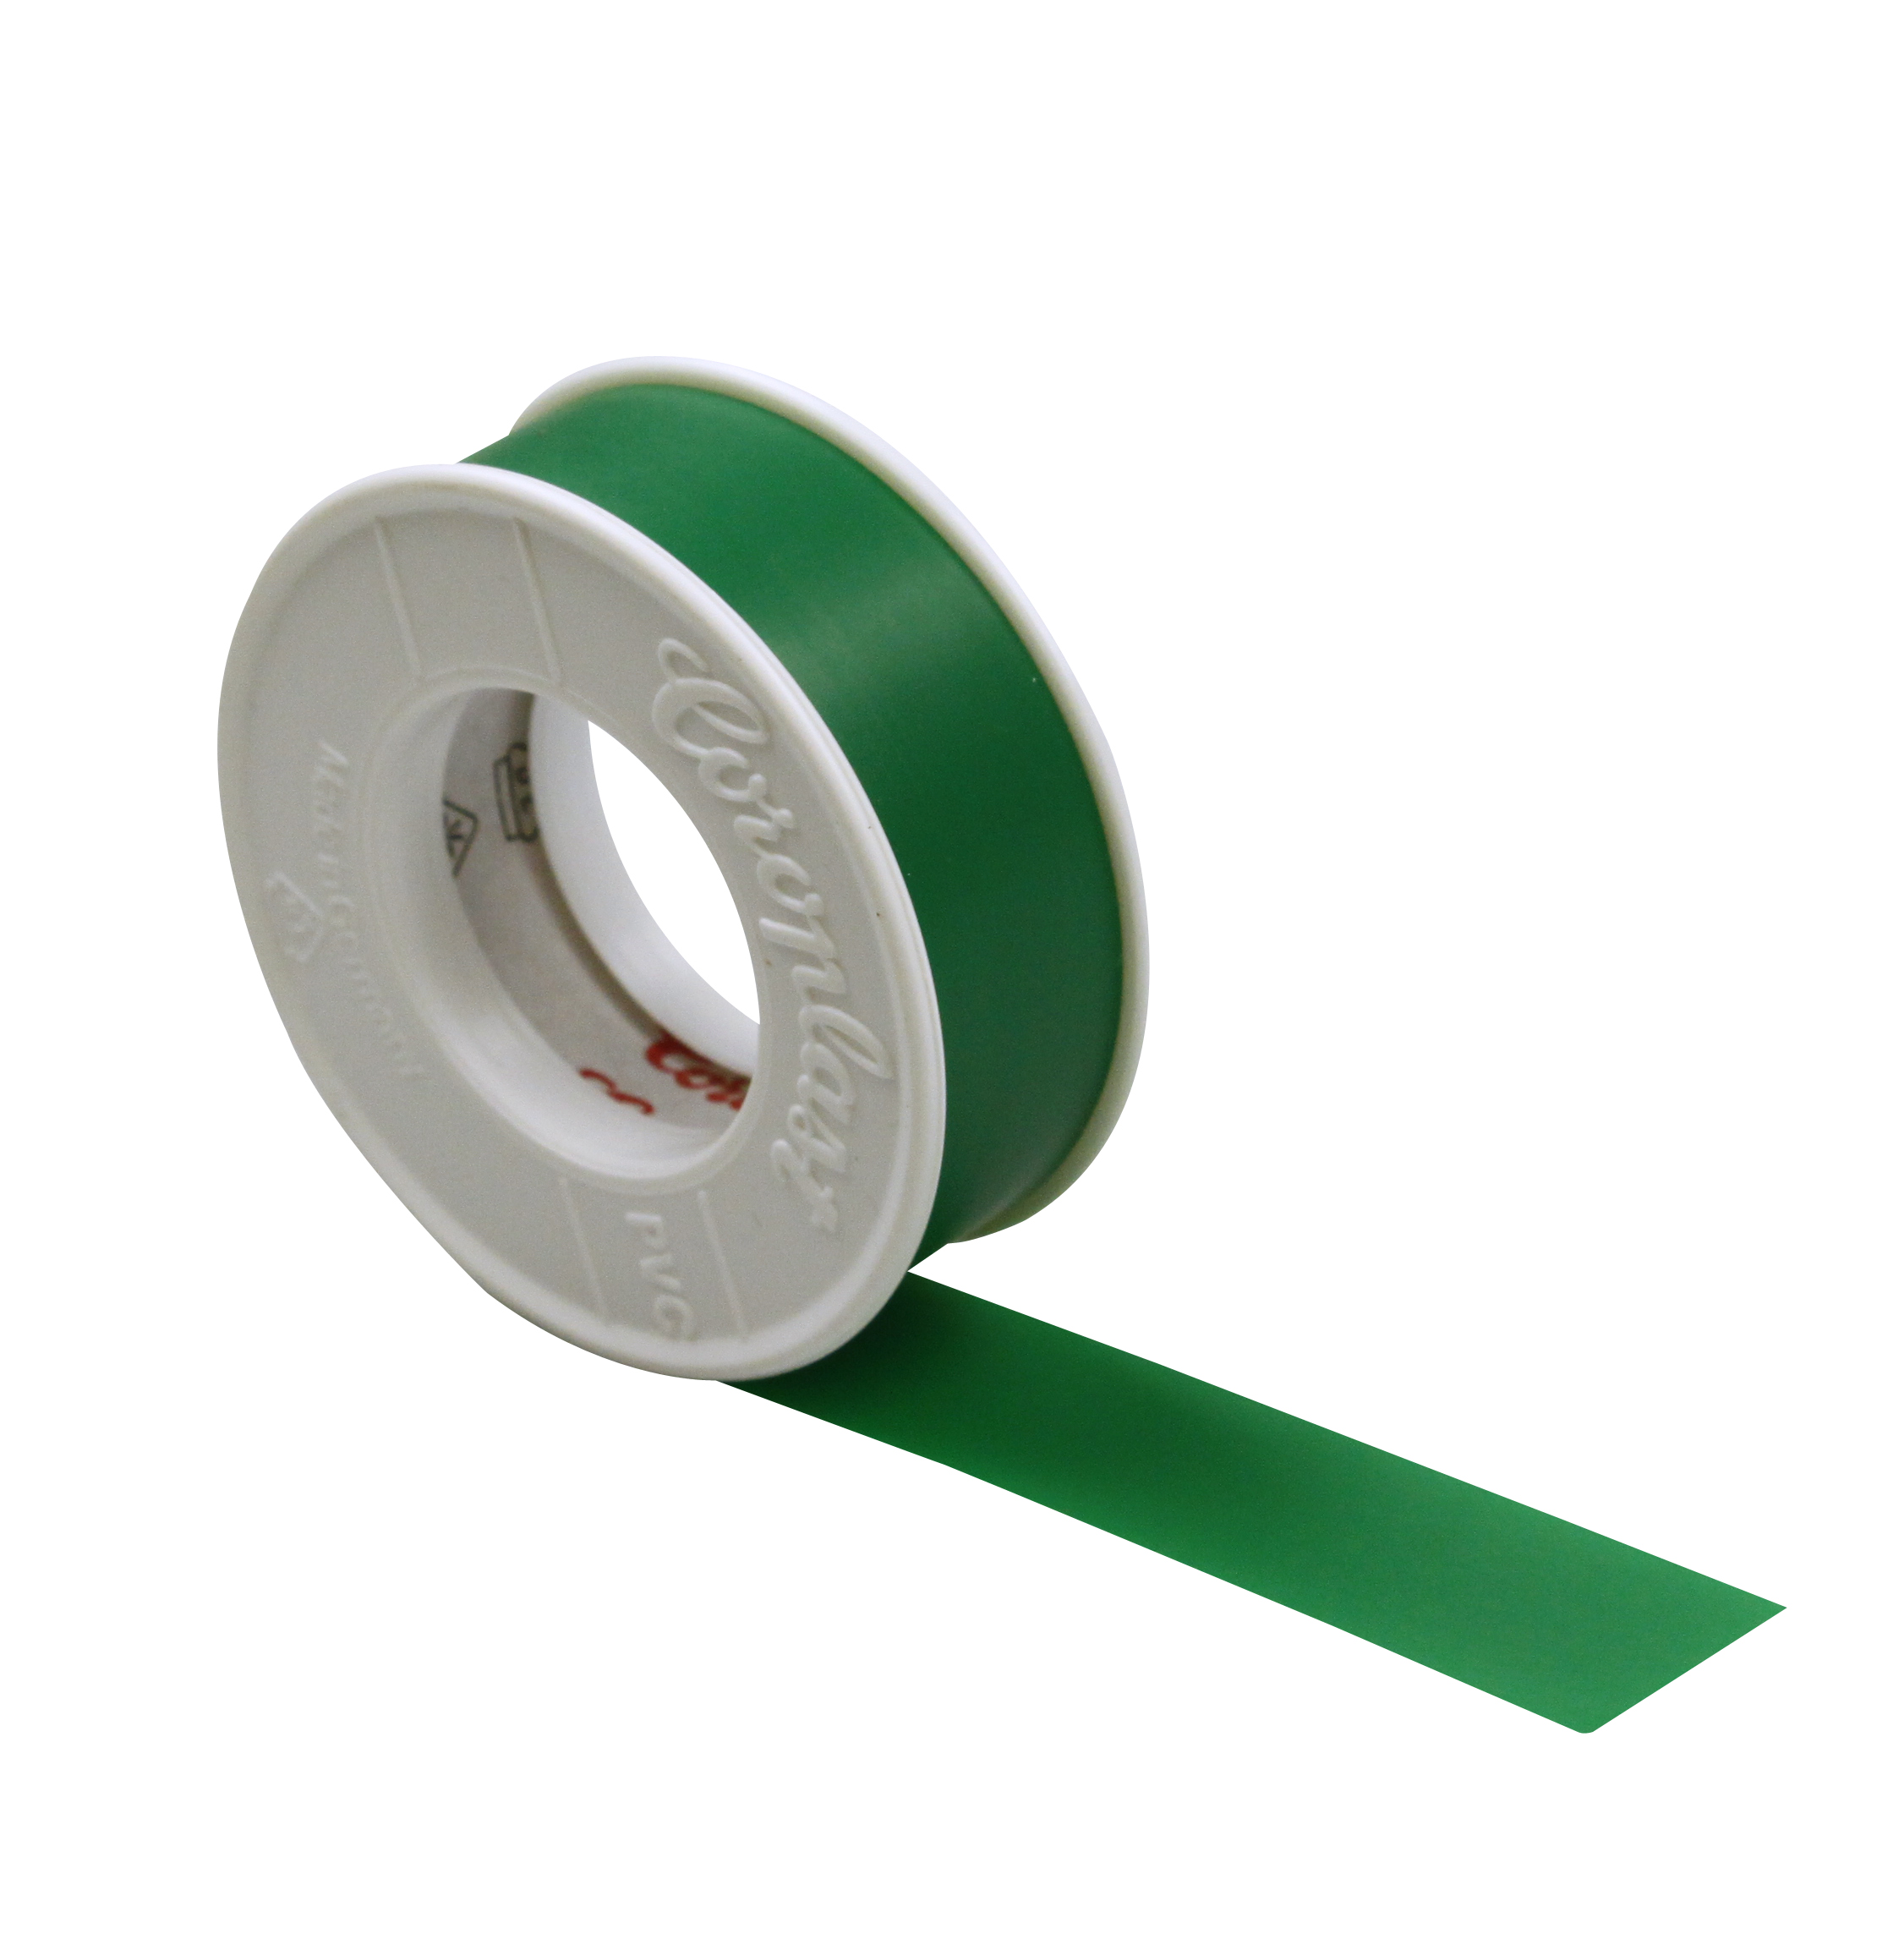 Foto: Isolierband grün 15mm x 10m-Coroplast (c) Schrack